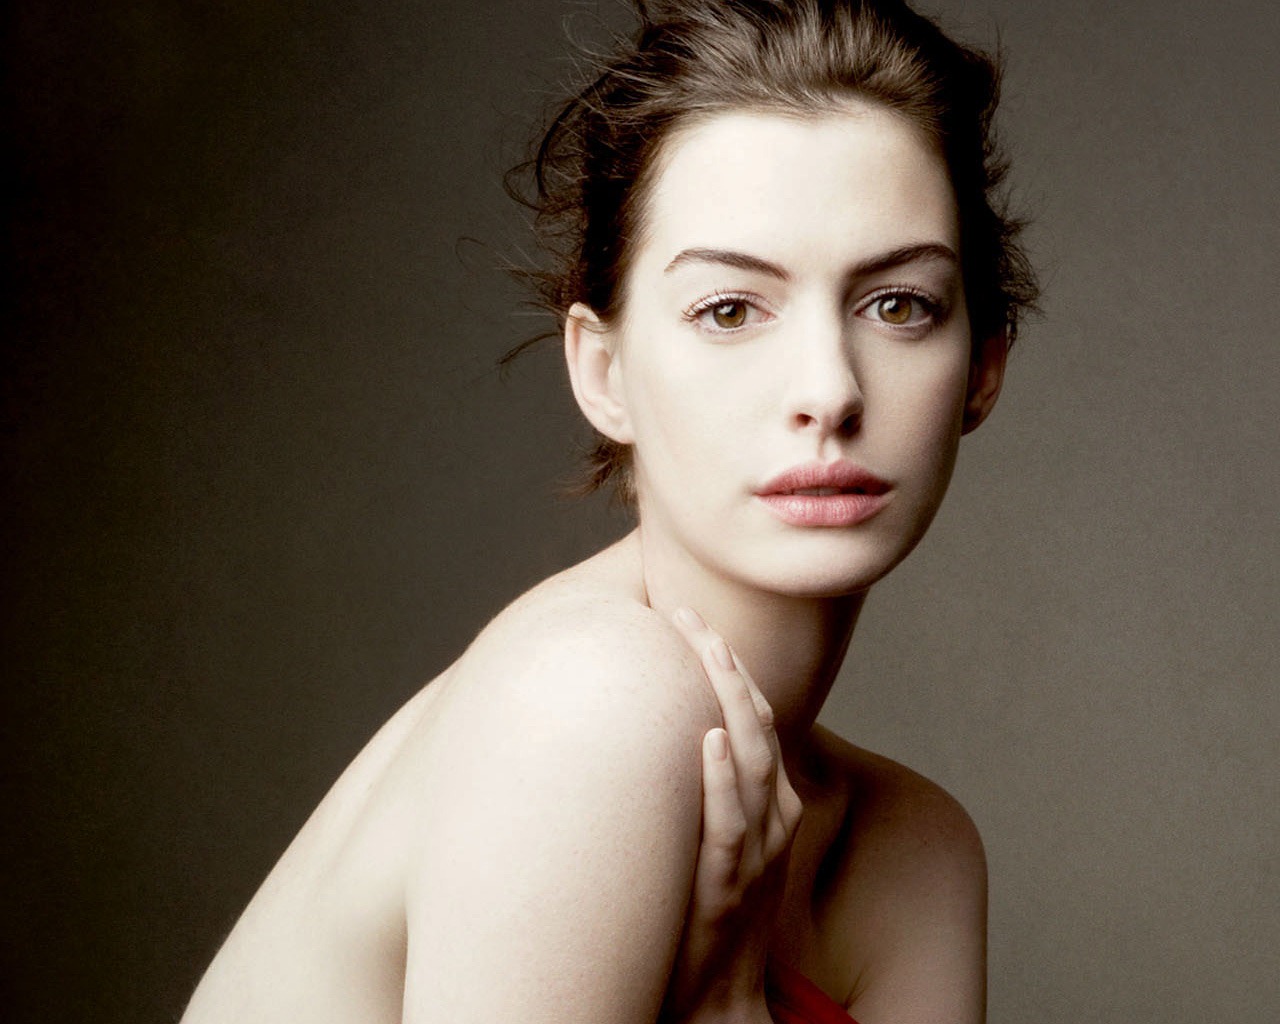 Anne Hathaway zawalczy o przetrwanie w ?The Lifeboat?